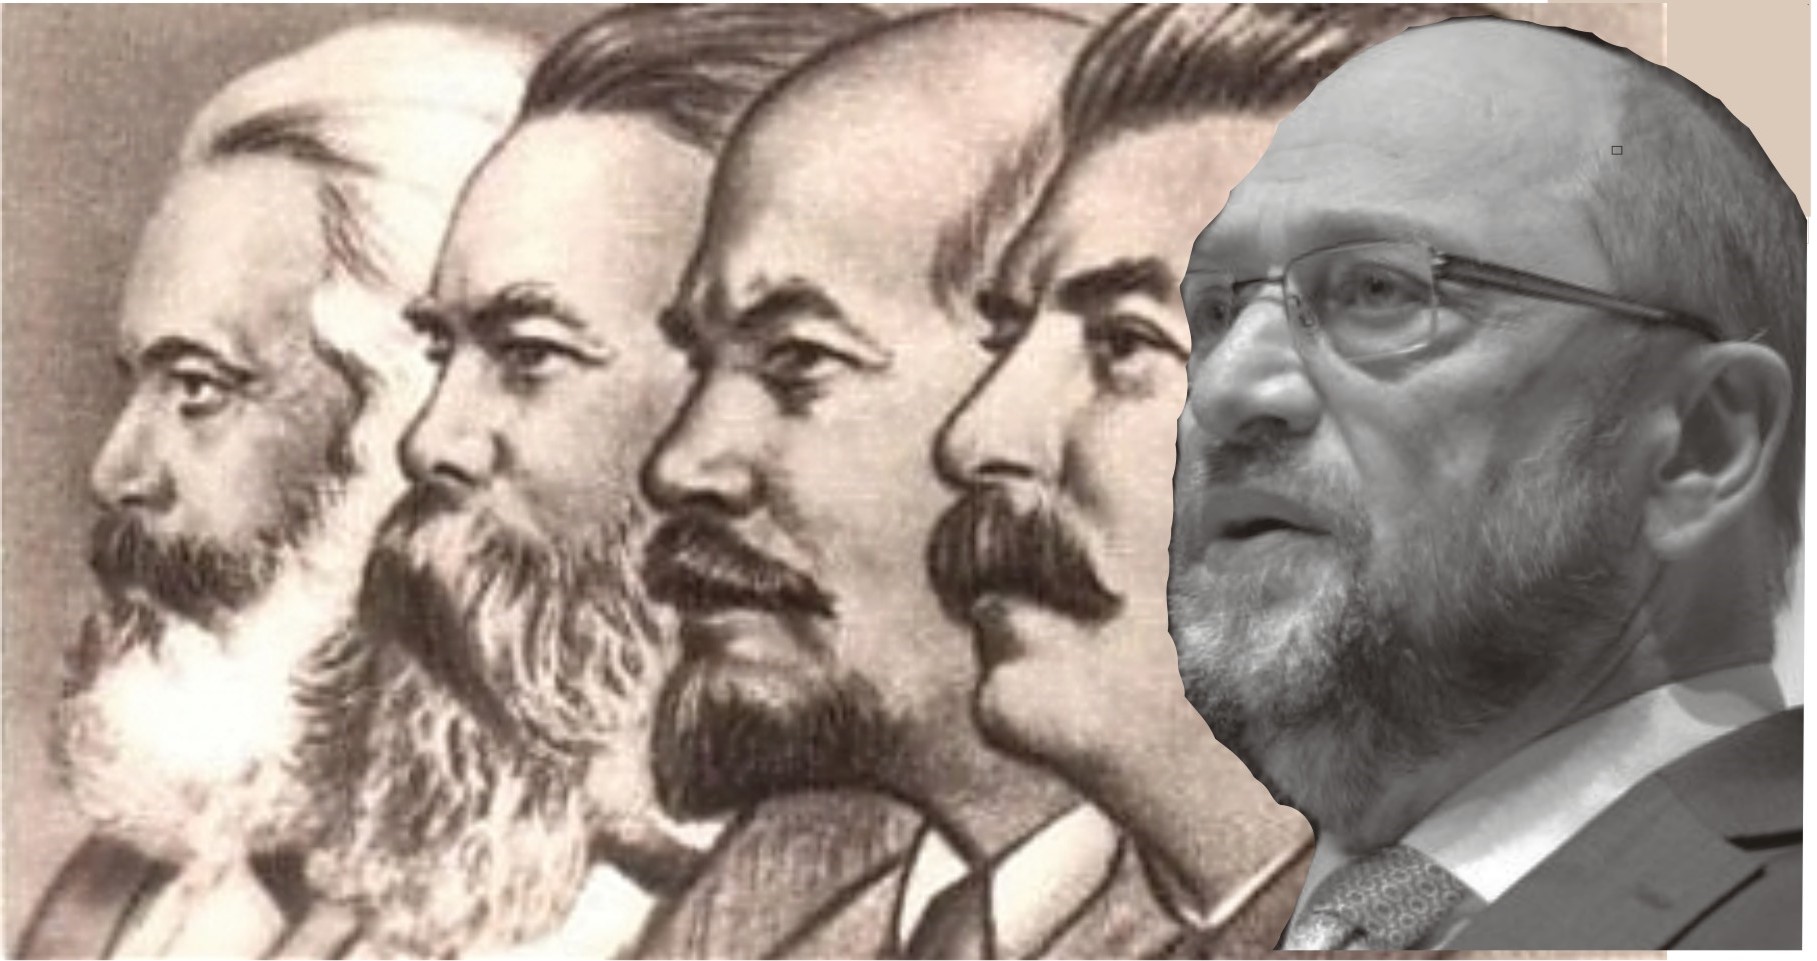 Маркс - Энгельс - Ленин